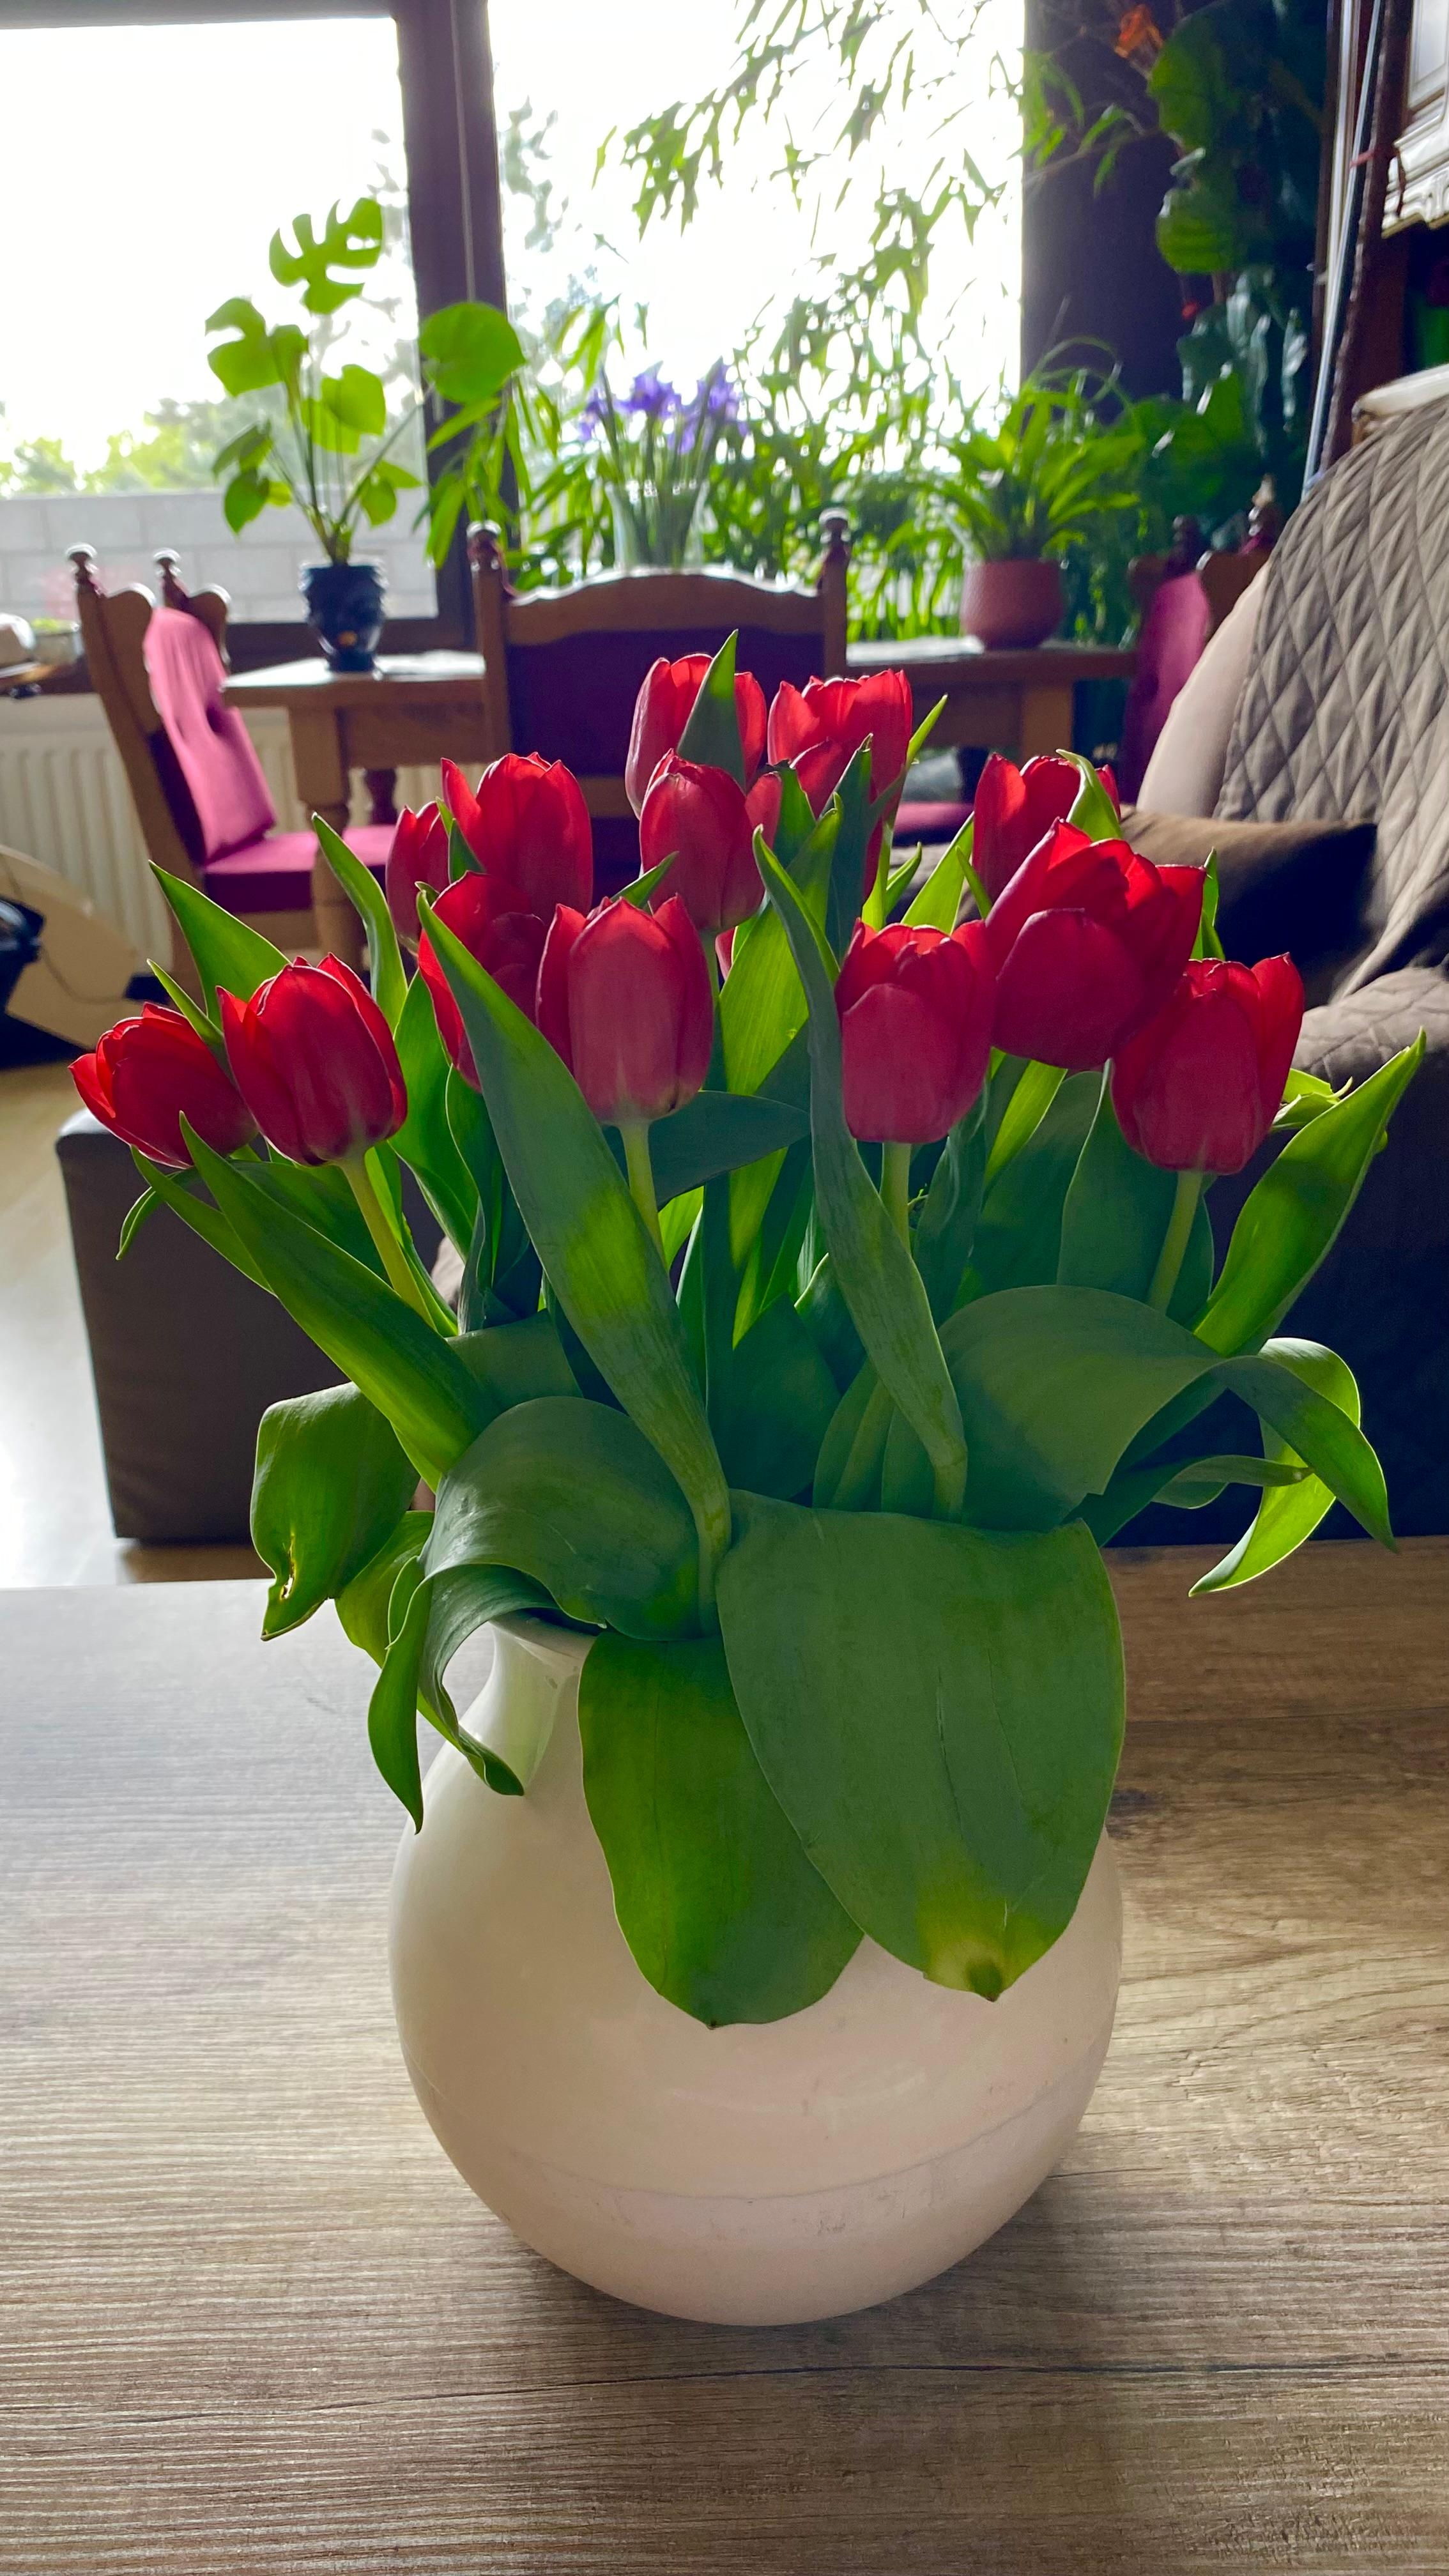 #tulpen 🌷 #couchliebt #wohnzimmer
Mein letzter Tulpenstrauss dieses Jahr!